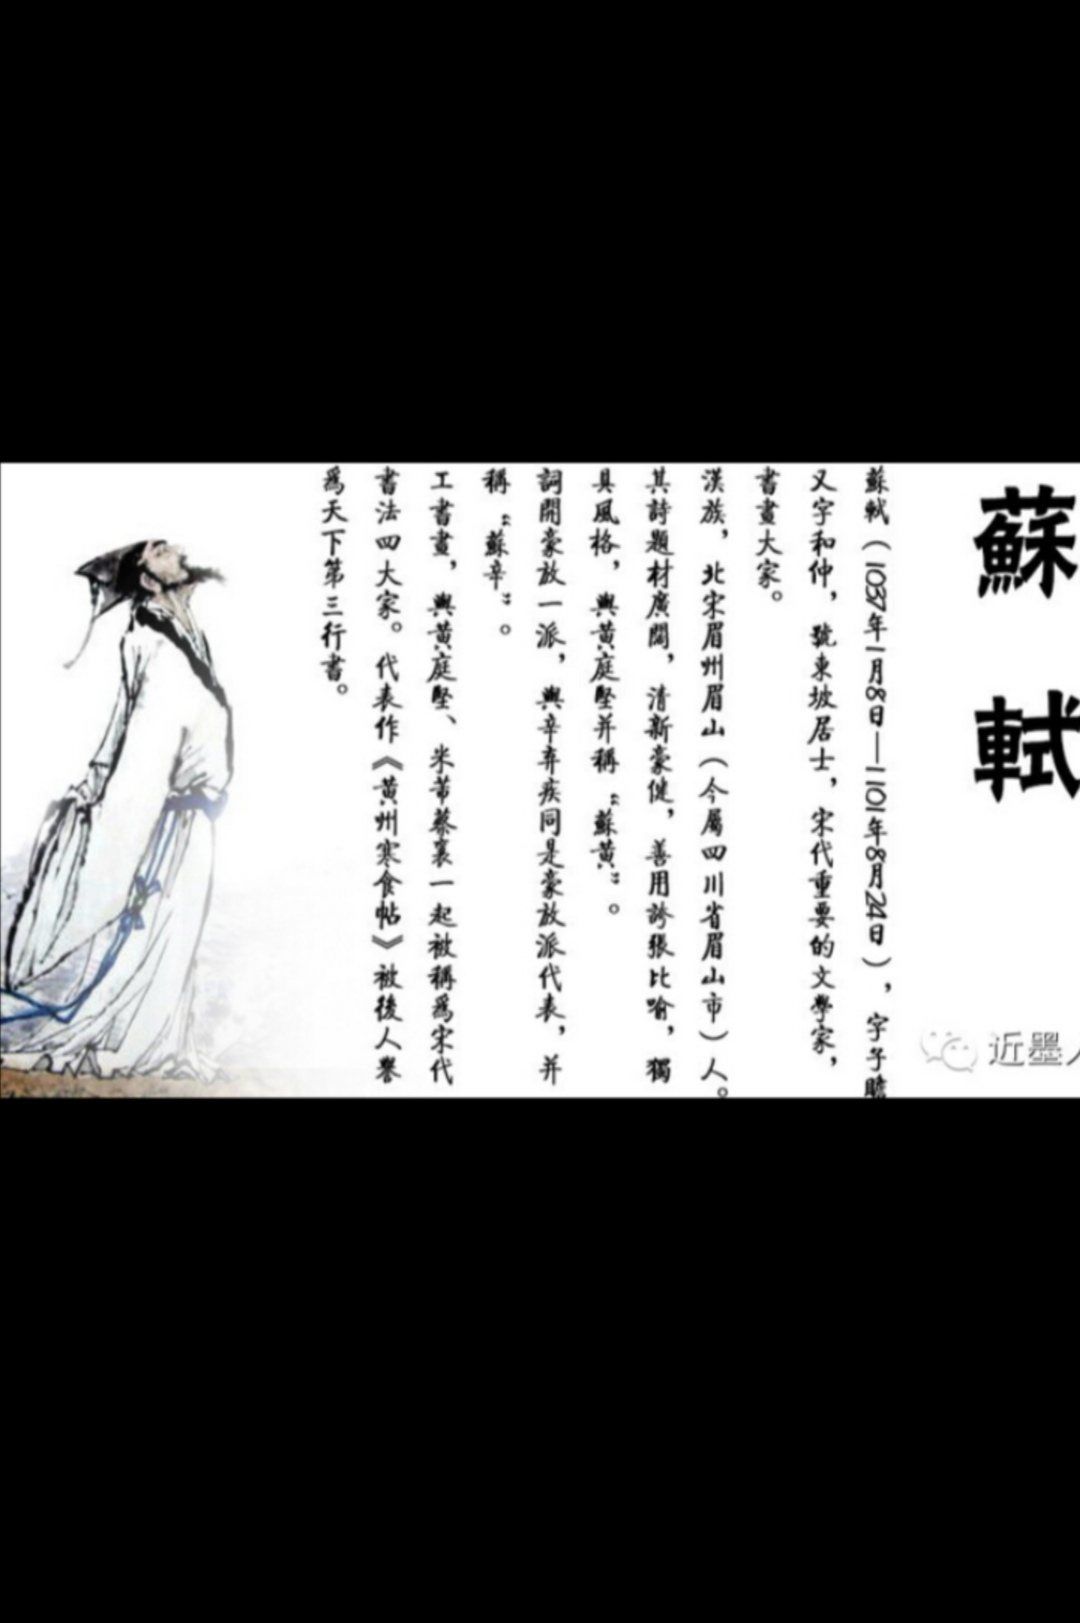 苏轼儒道佛家思想 （李向东）中国文化的多元互补的特色特征